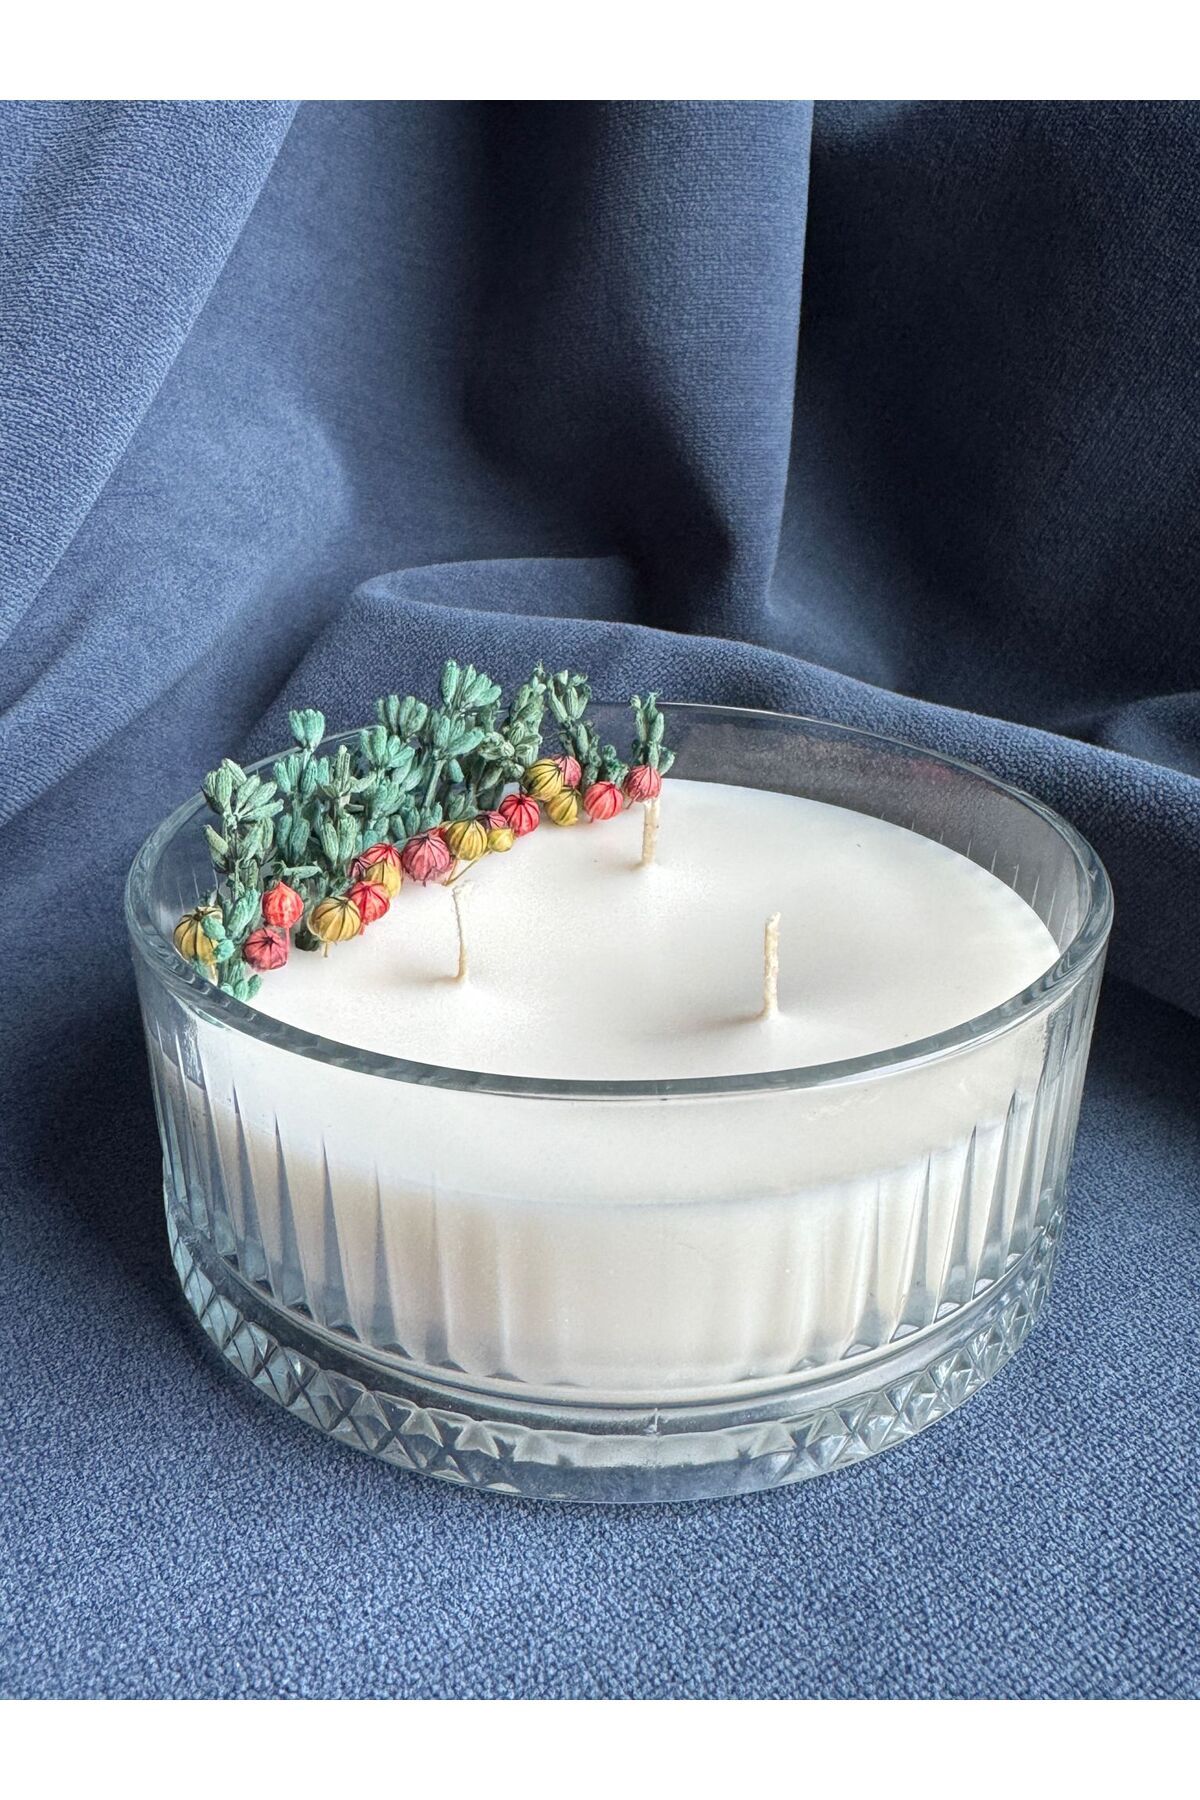 Nish Candles Büyük Kristal Cam Kasede Lavanta ve Kuru Çiçeklerle Süslenmiş Kokulu Doğal Mum